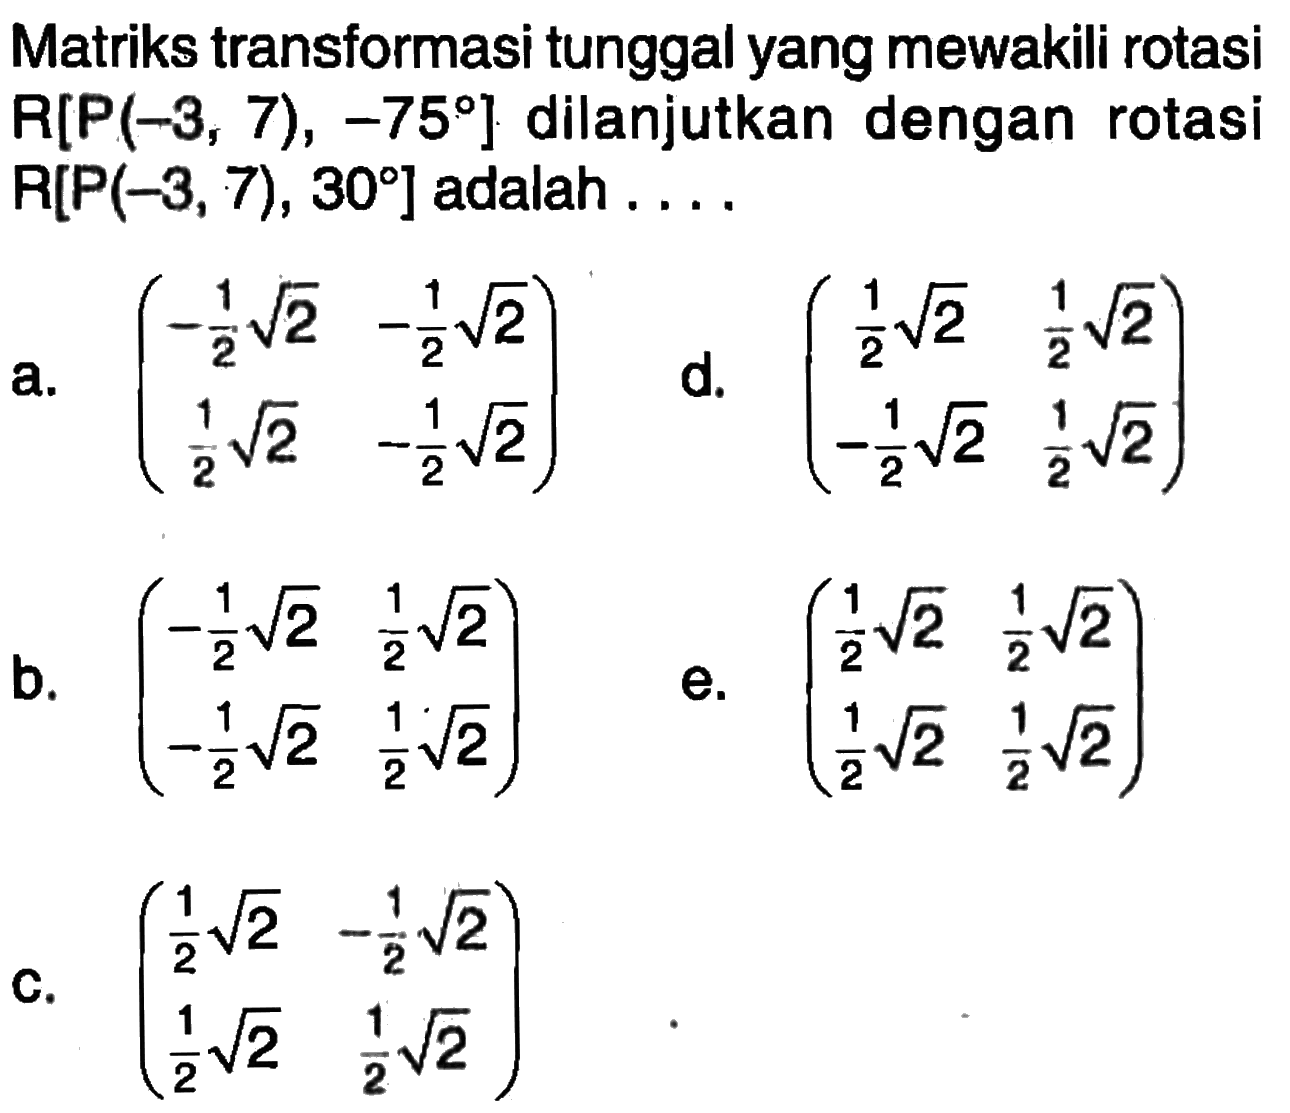 Matriks transformasi tunggal yang mewakili rotasi R[P(-3, 7), -75] dilanjutkan dengan rotasi R[P(-3,7), 30] adalah ....